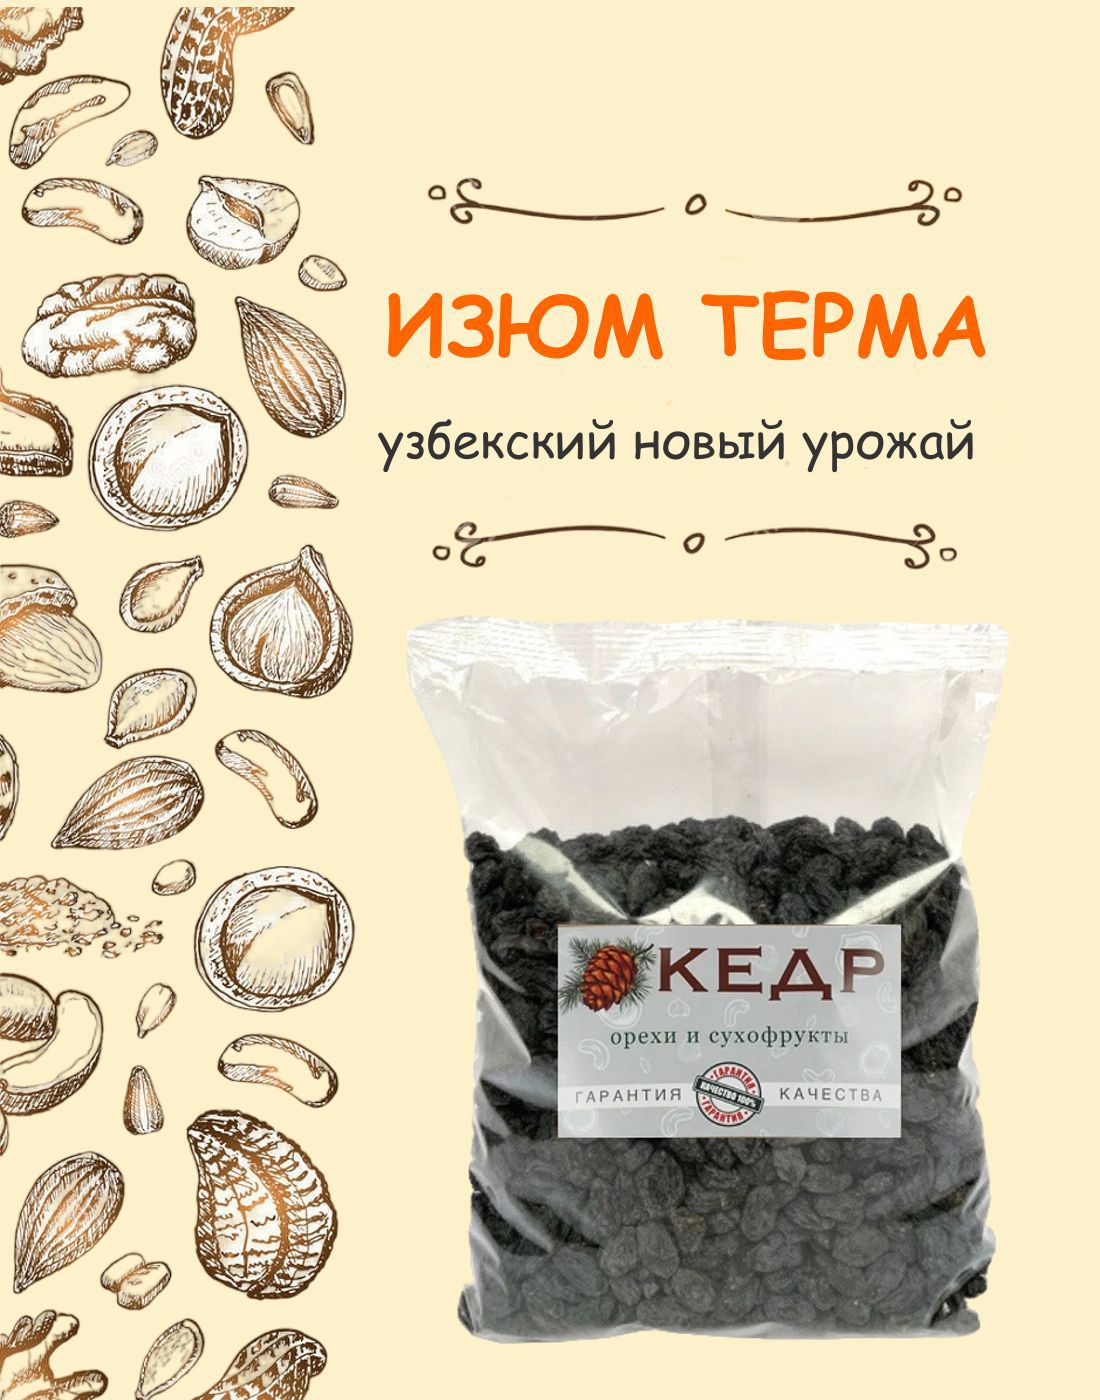 Изюм КЕДР. Орехи и сухофрукты узбекский черный натуральный без сахара, 1 кг